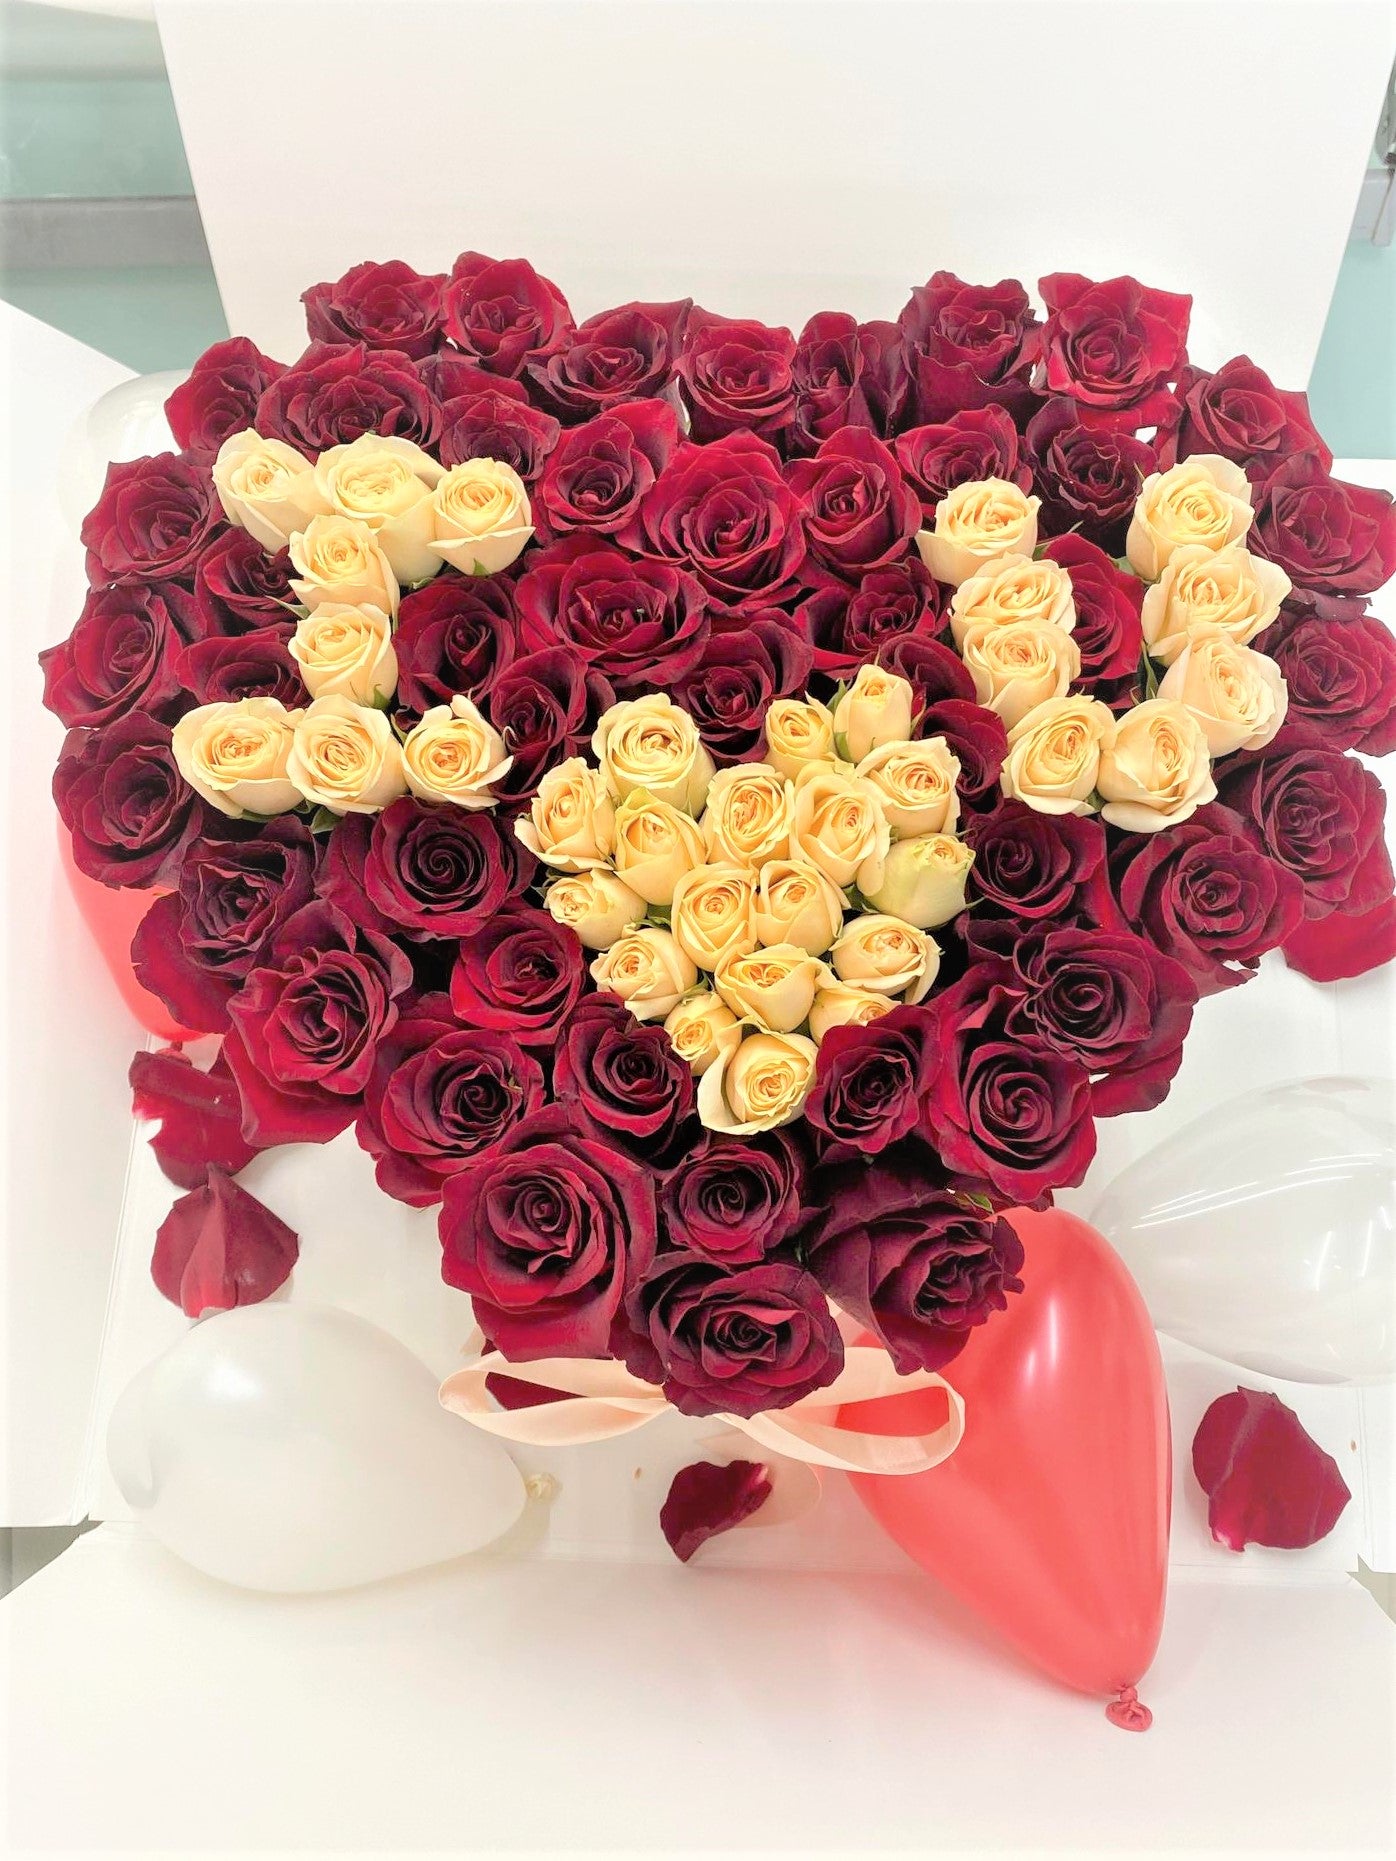 I Heart U Supreme More Than 50 Fresh Cut Roses